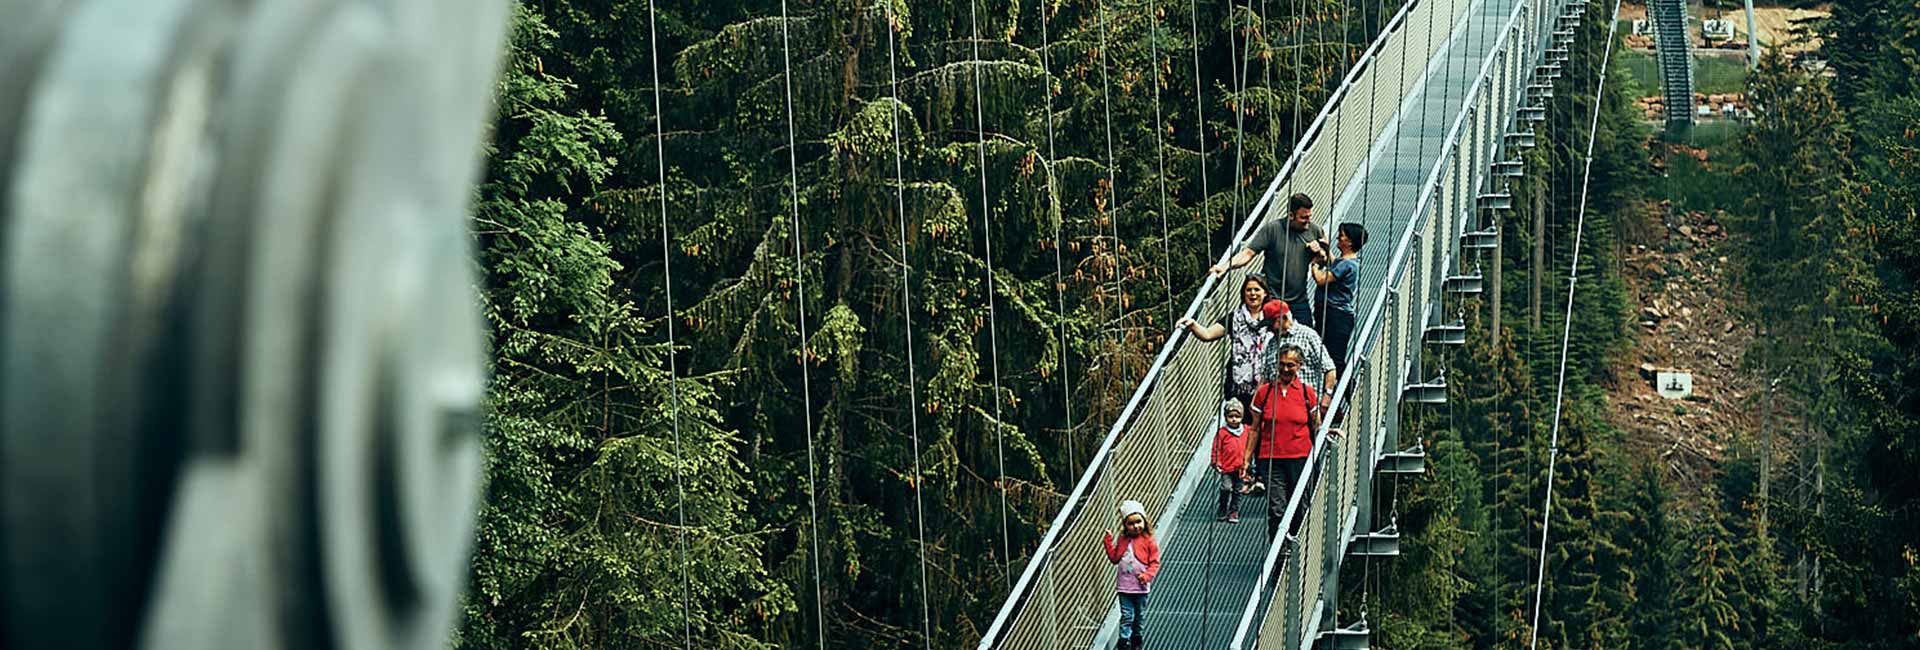 Les visiteurs traversent le pont suspendu WILDLINE